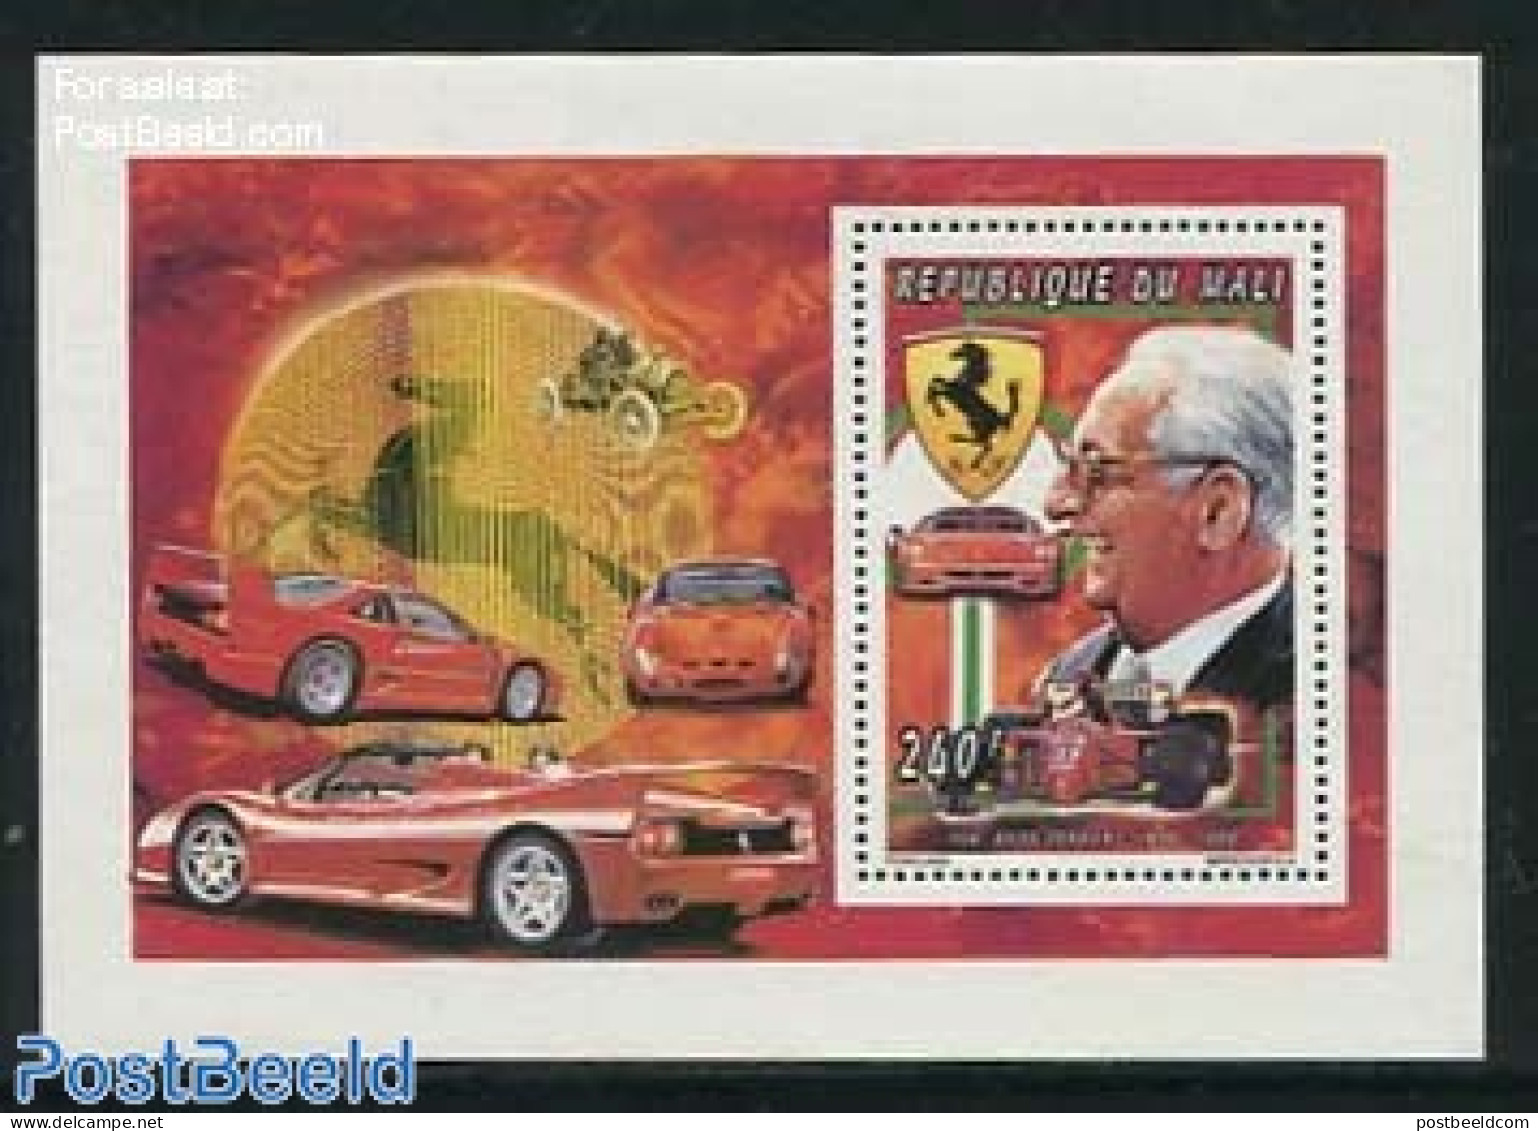 Mali 1995 Ferrari S/s, Mint NH, Sport - Transport - Autosports - Automobiles - Ferrari - Auto's